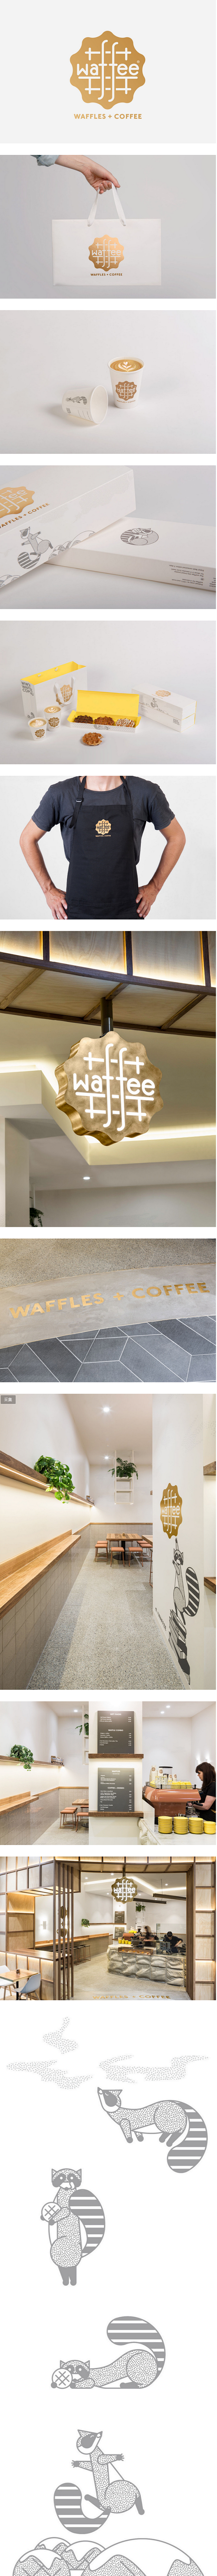 墨尔本Waffee华夫饼和咖啡店品牌视觉...